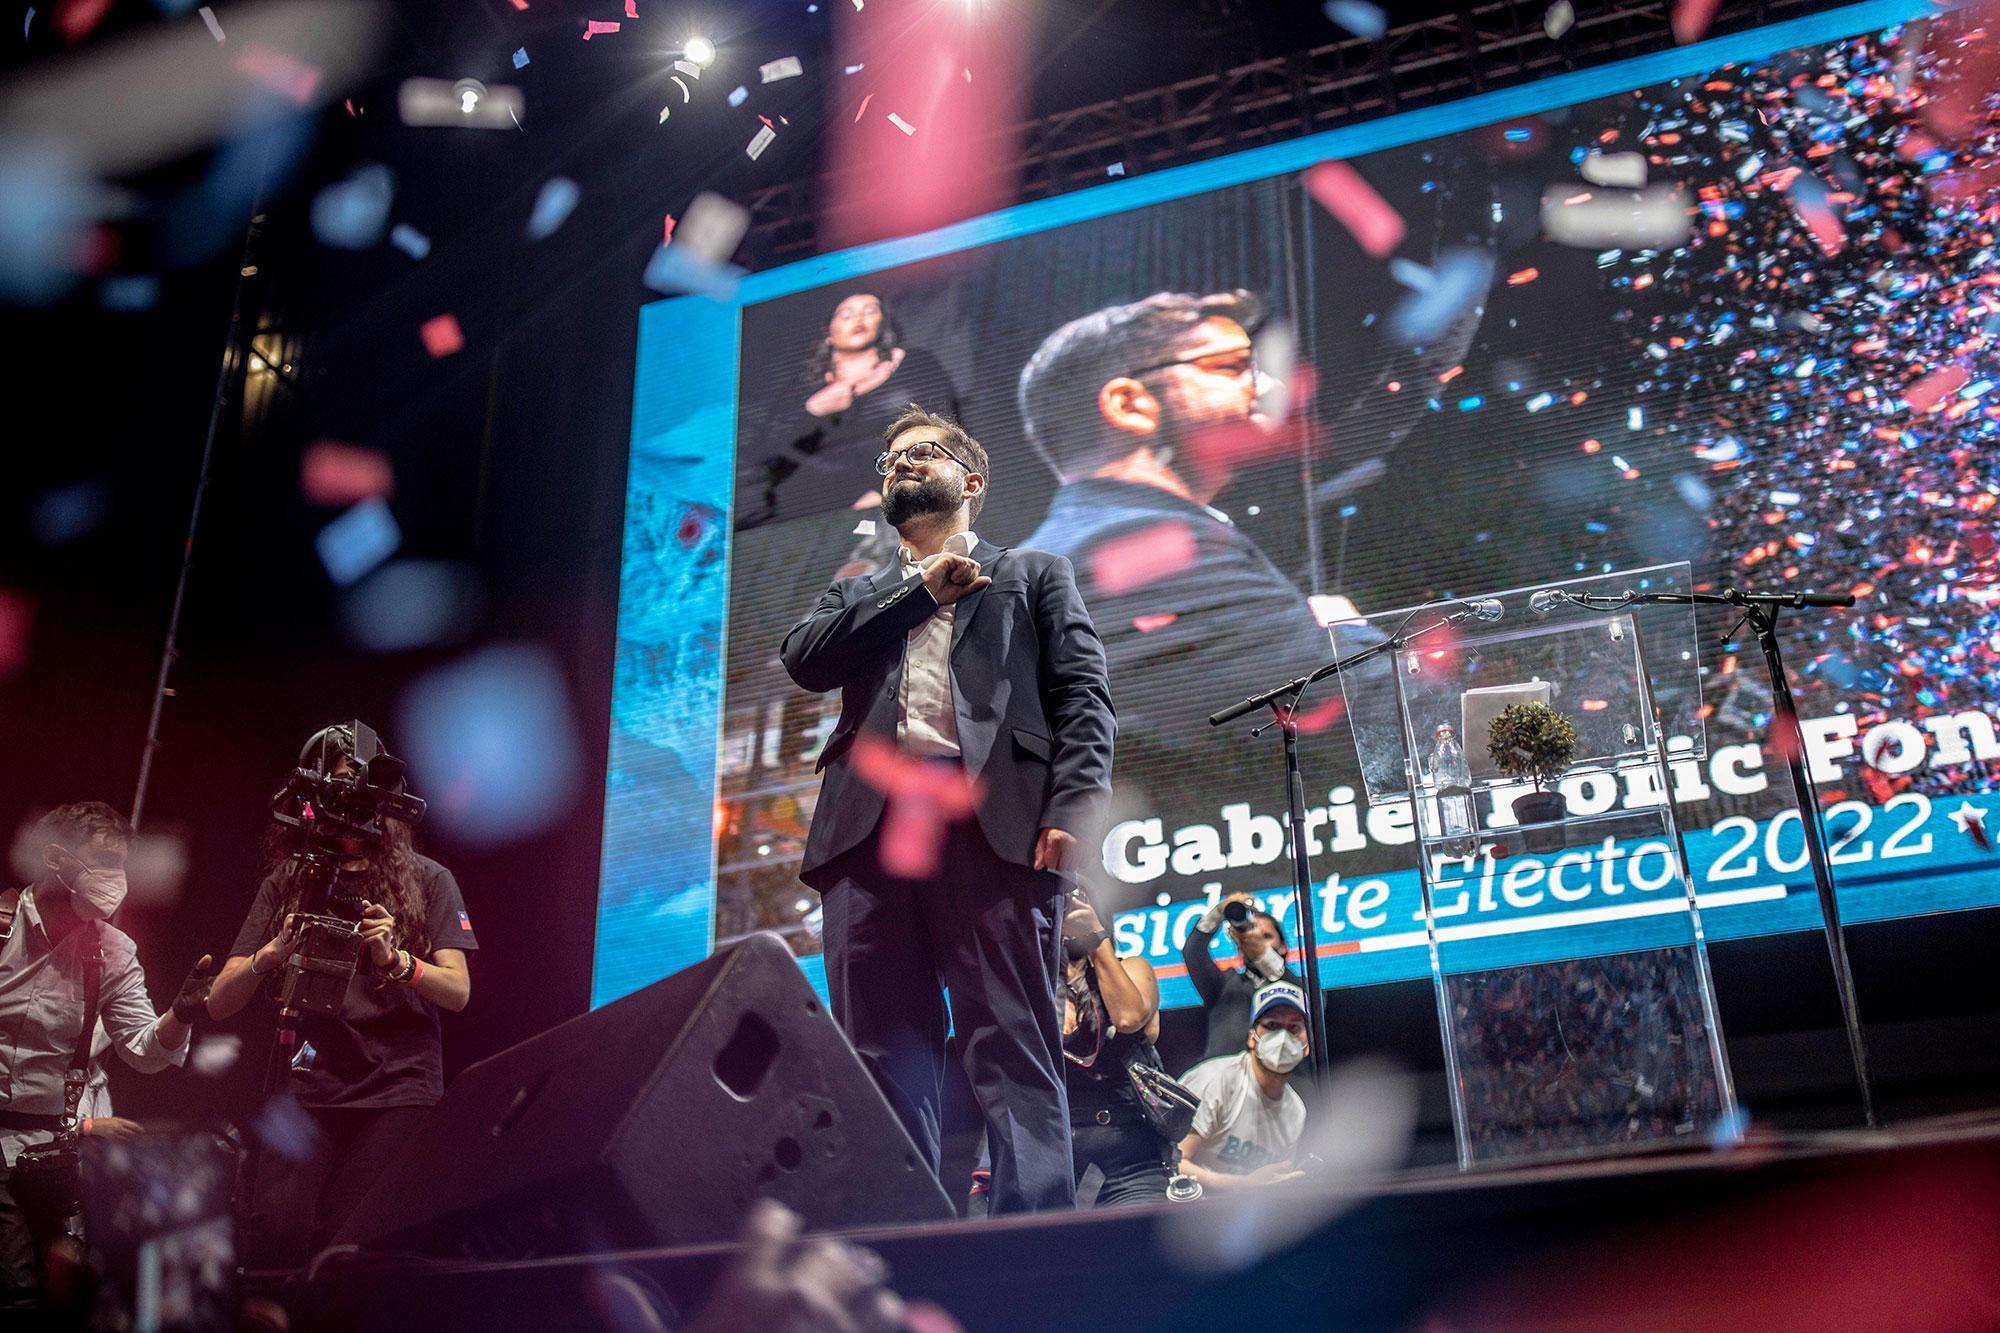 Punto de inflexión política en Chile: Gabriel Boric es elegido presidente